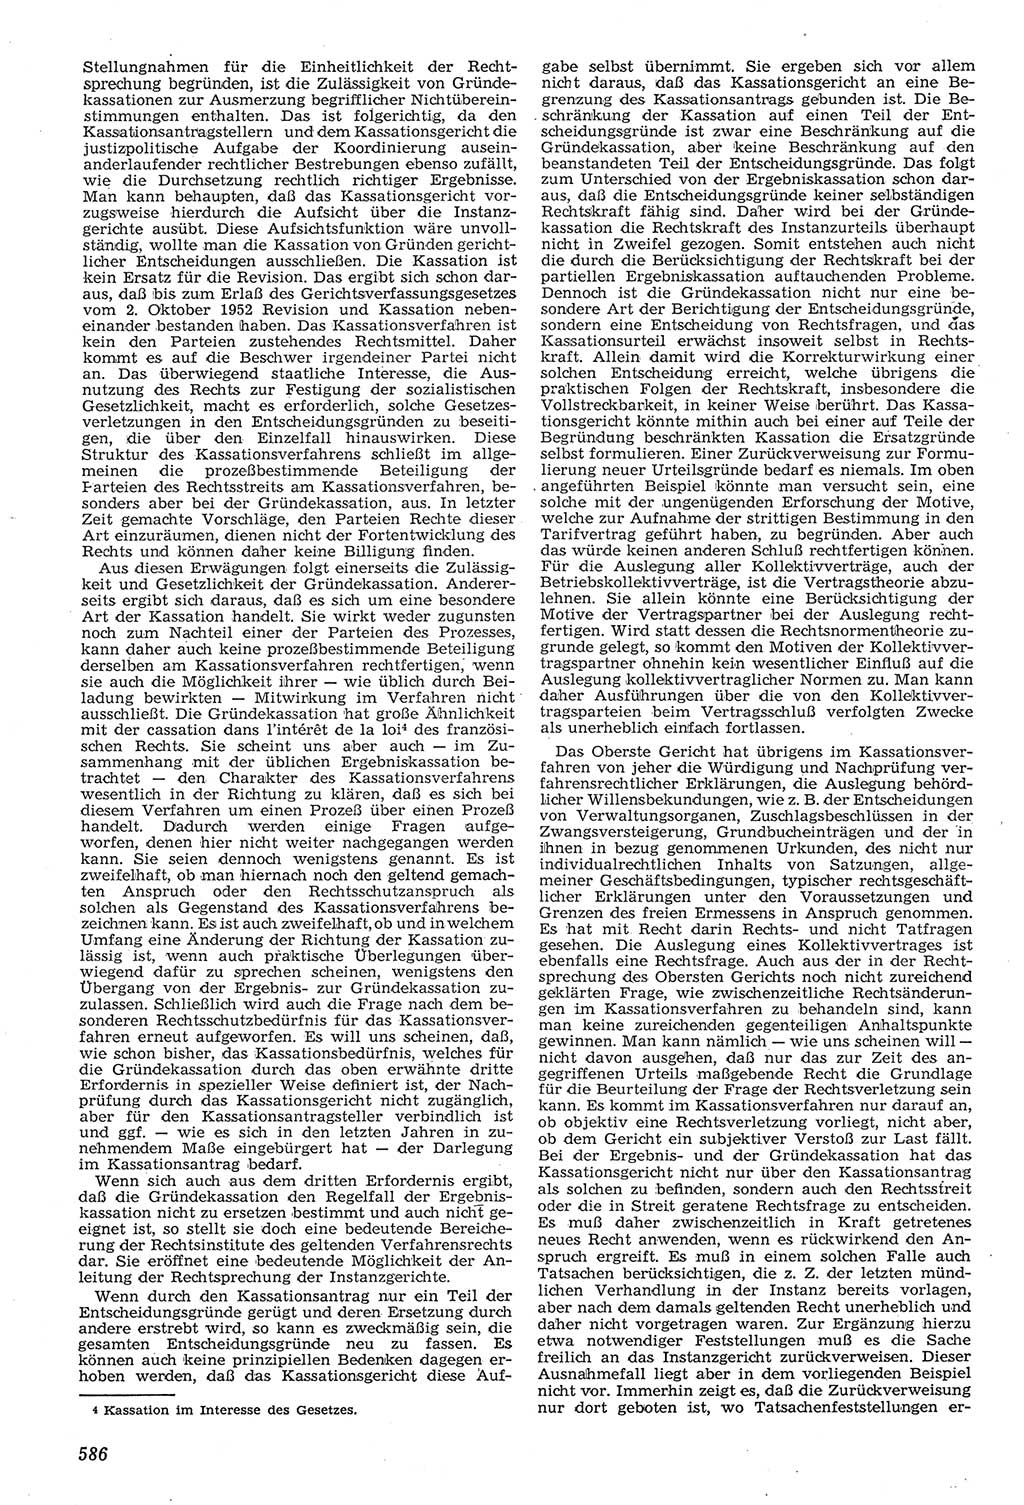 Neue Justiz (NJ), Zeitschrift für Recht und Rechtswissenschaft [Deutsche Demokratische Republik (DDR)], 11. Jahrgang 1957, Seite 586 (NJ DDR 1957, S. 586)